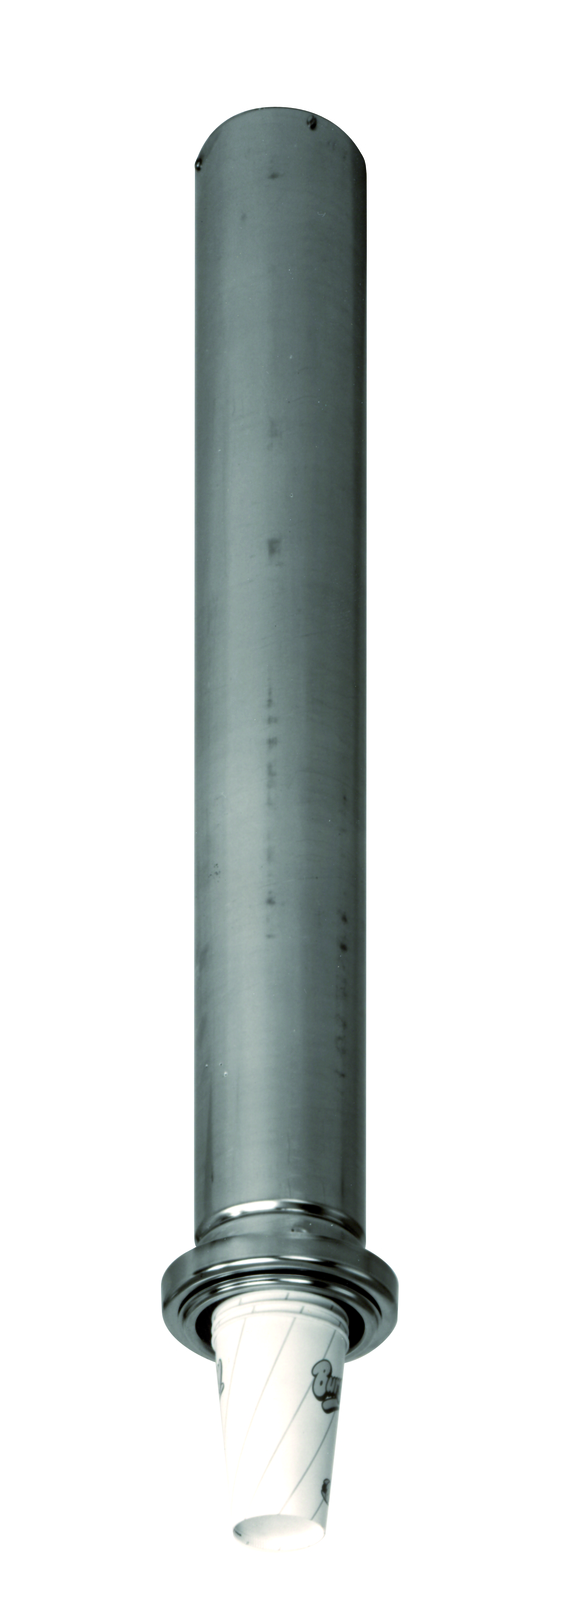 Becherspender-Einbauröhre aus CNS, - Becherspender BDP